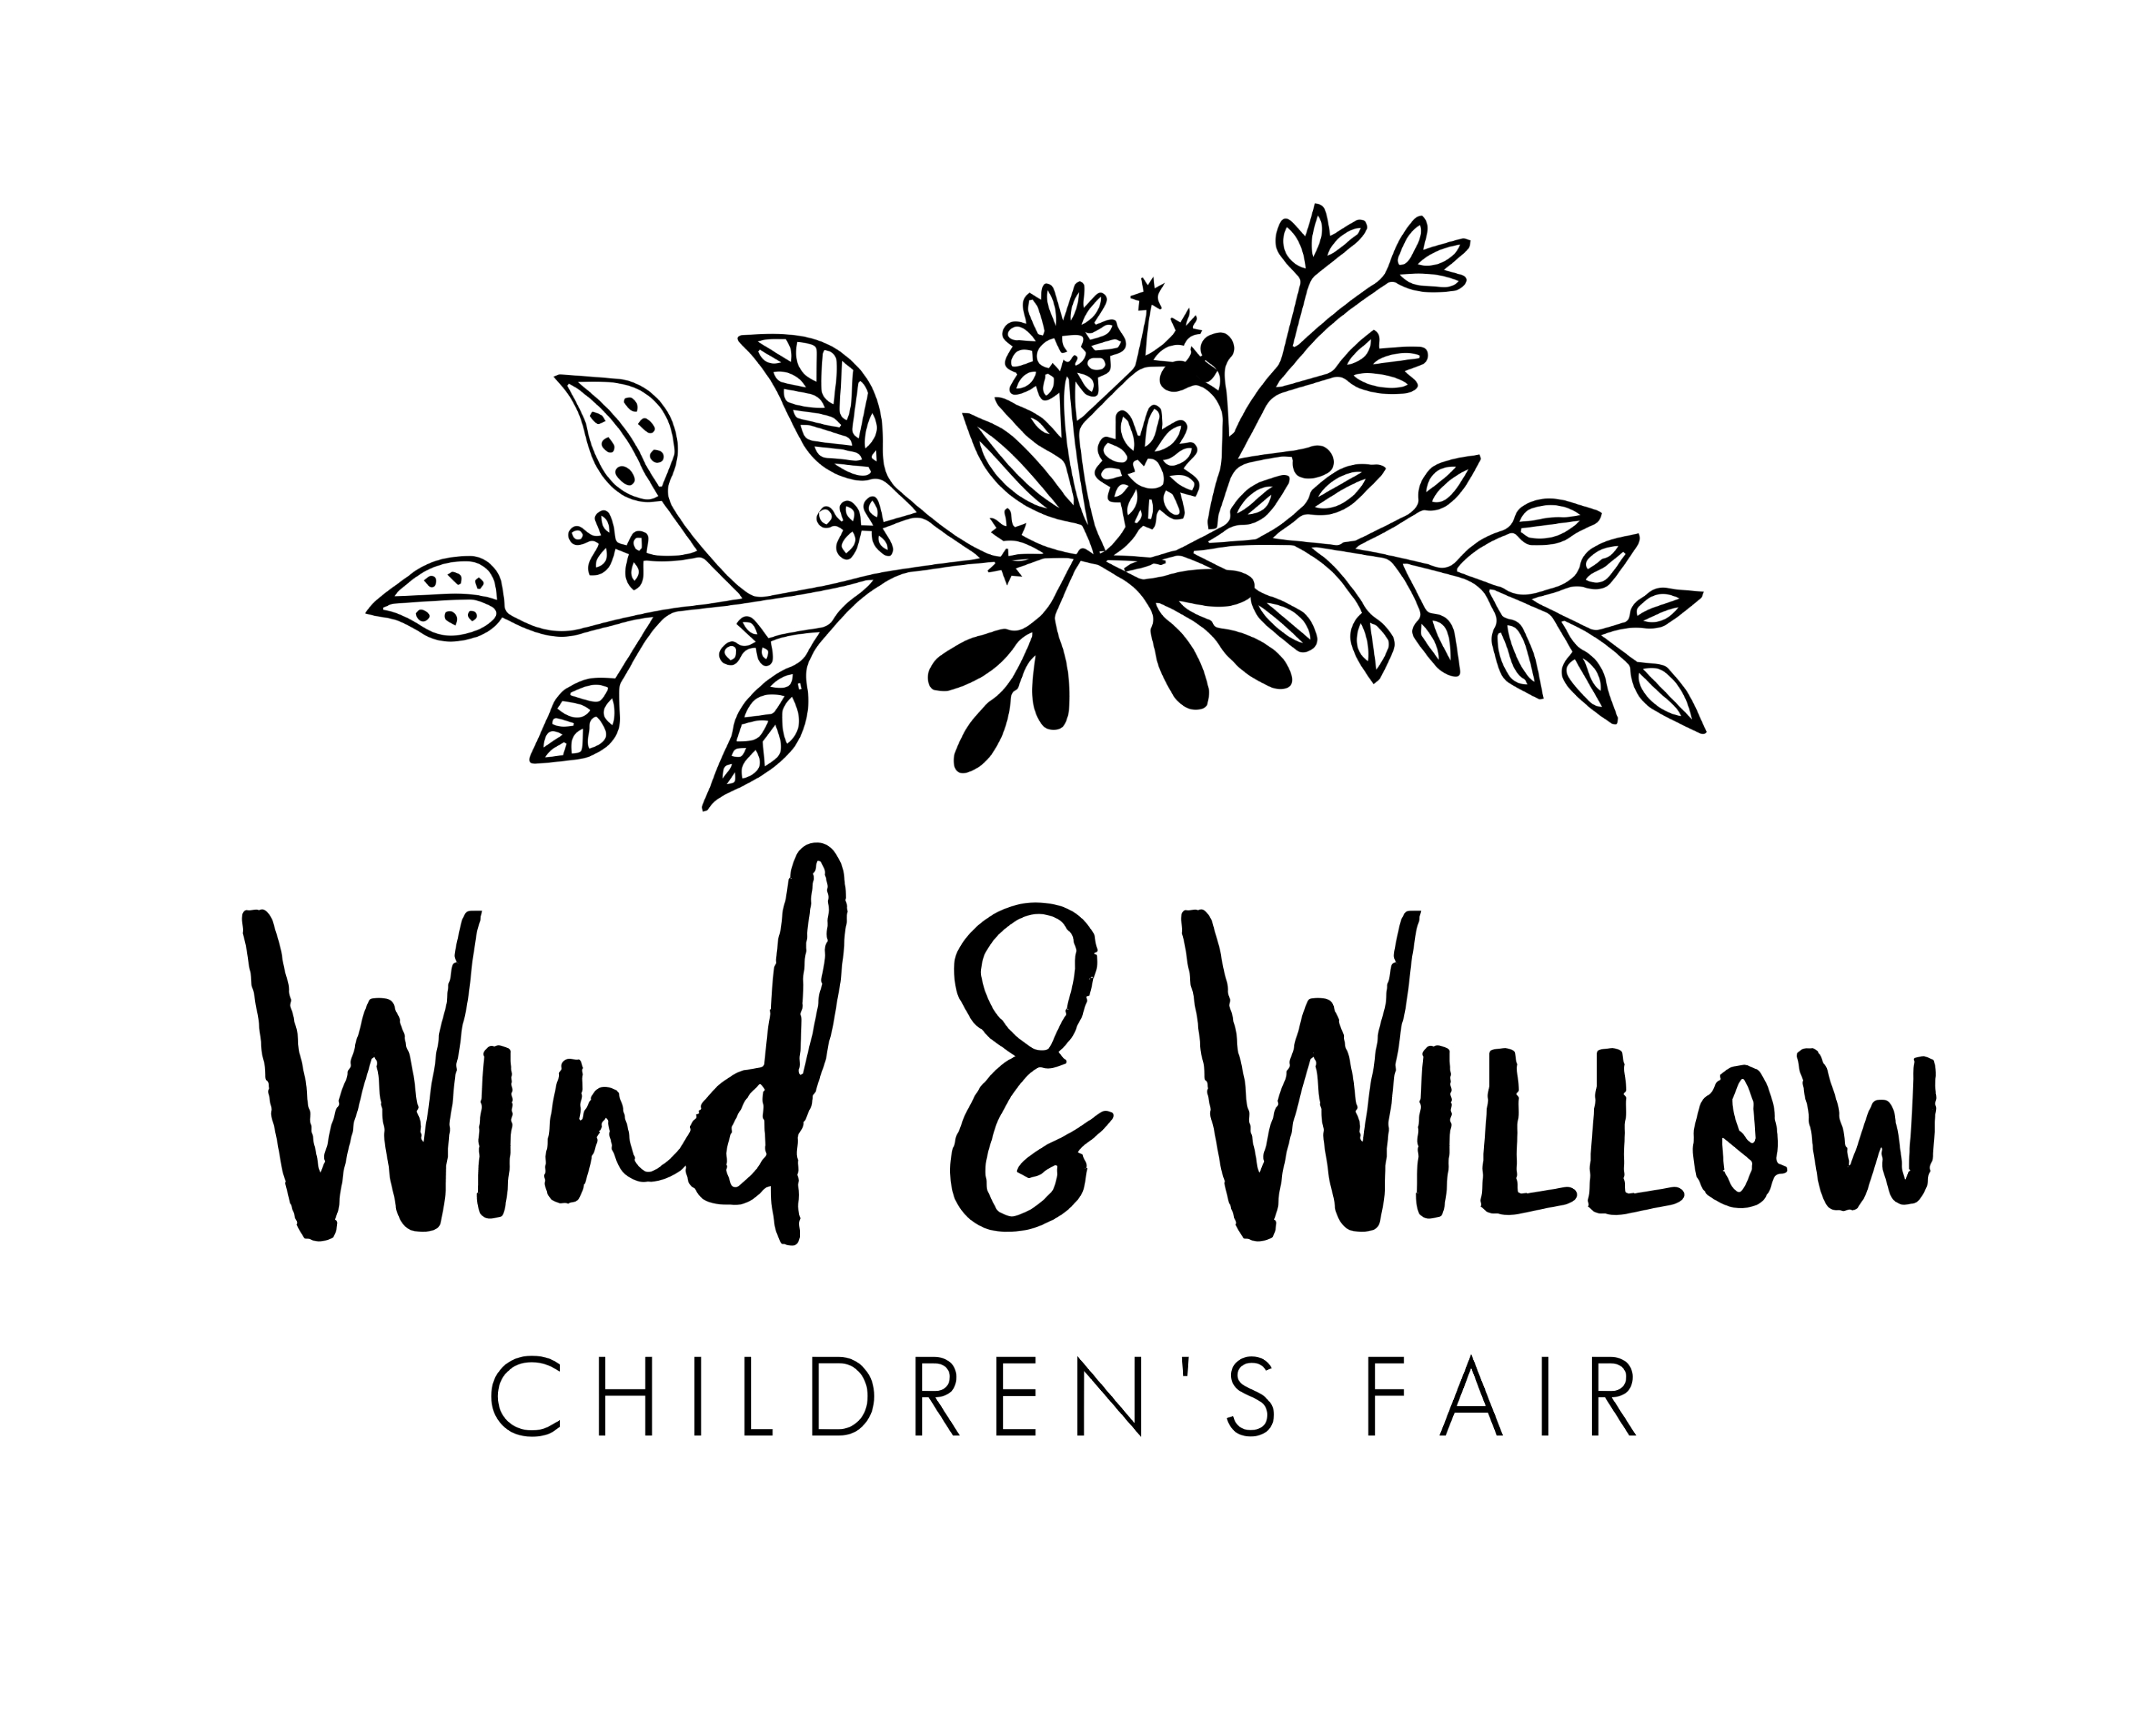 Wind & Willow Children's Fair | Tourism Victoria